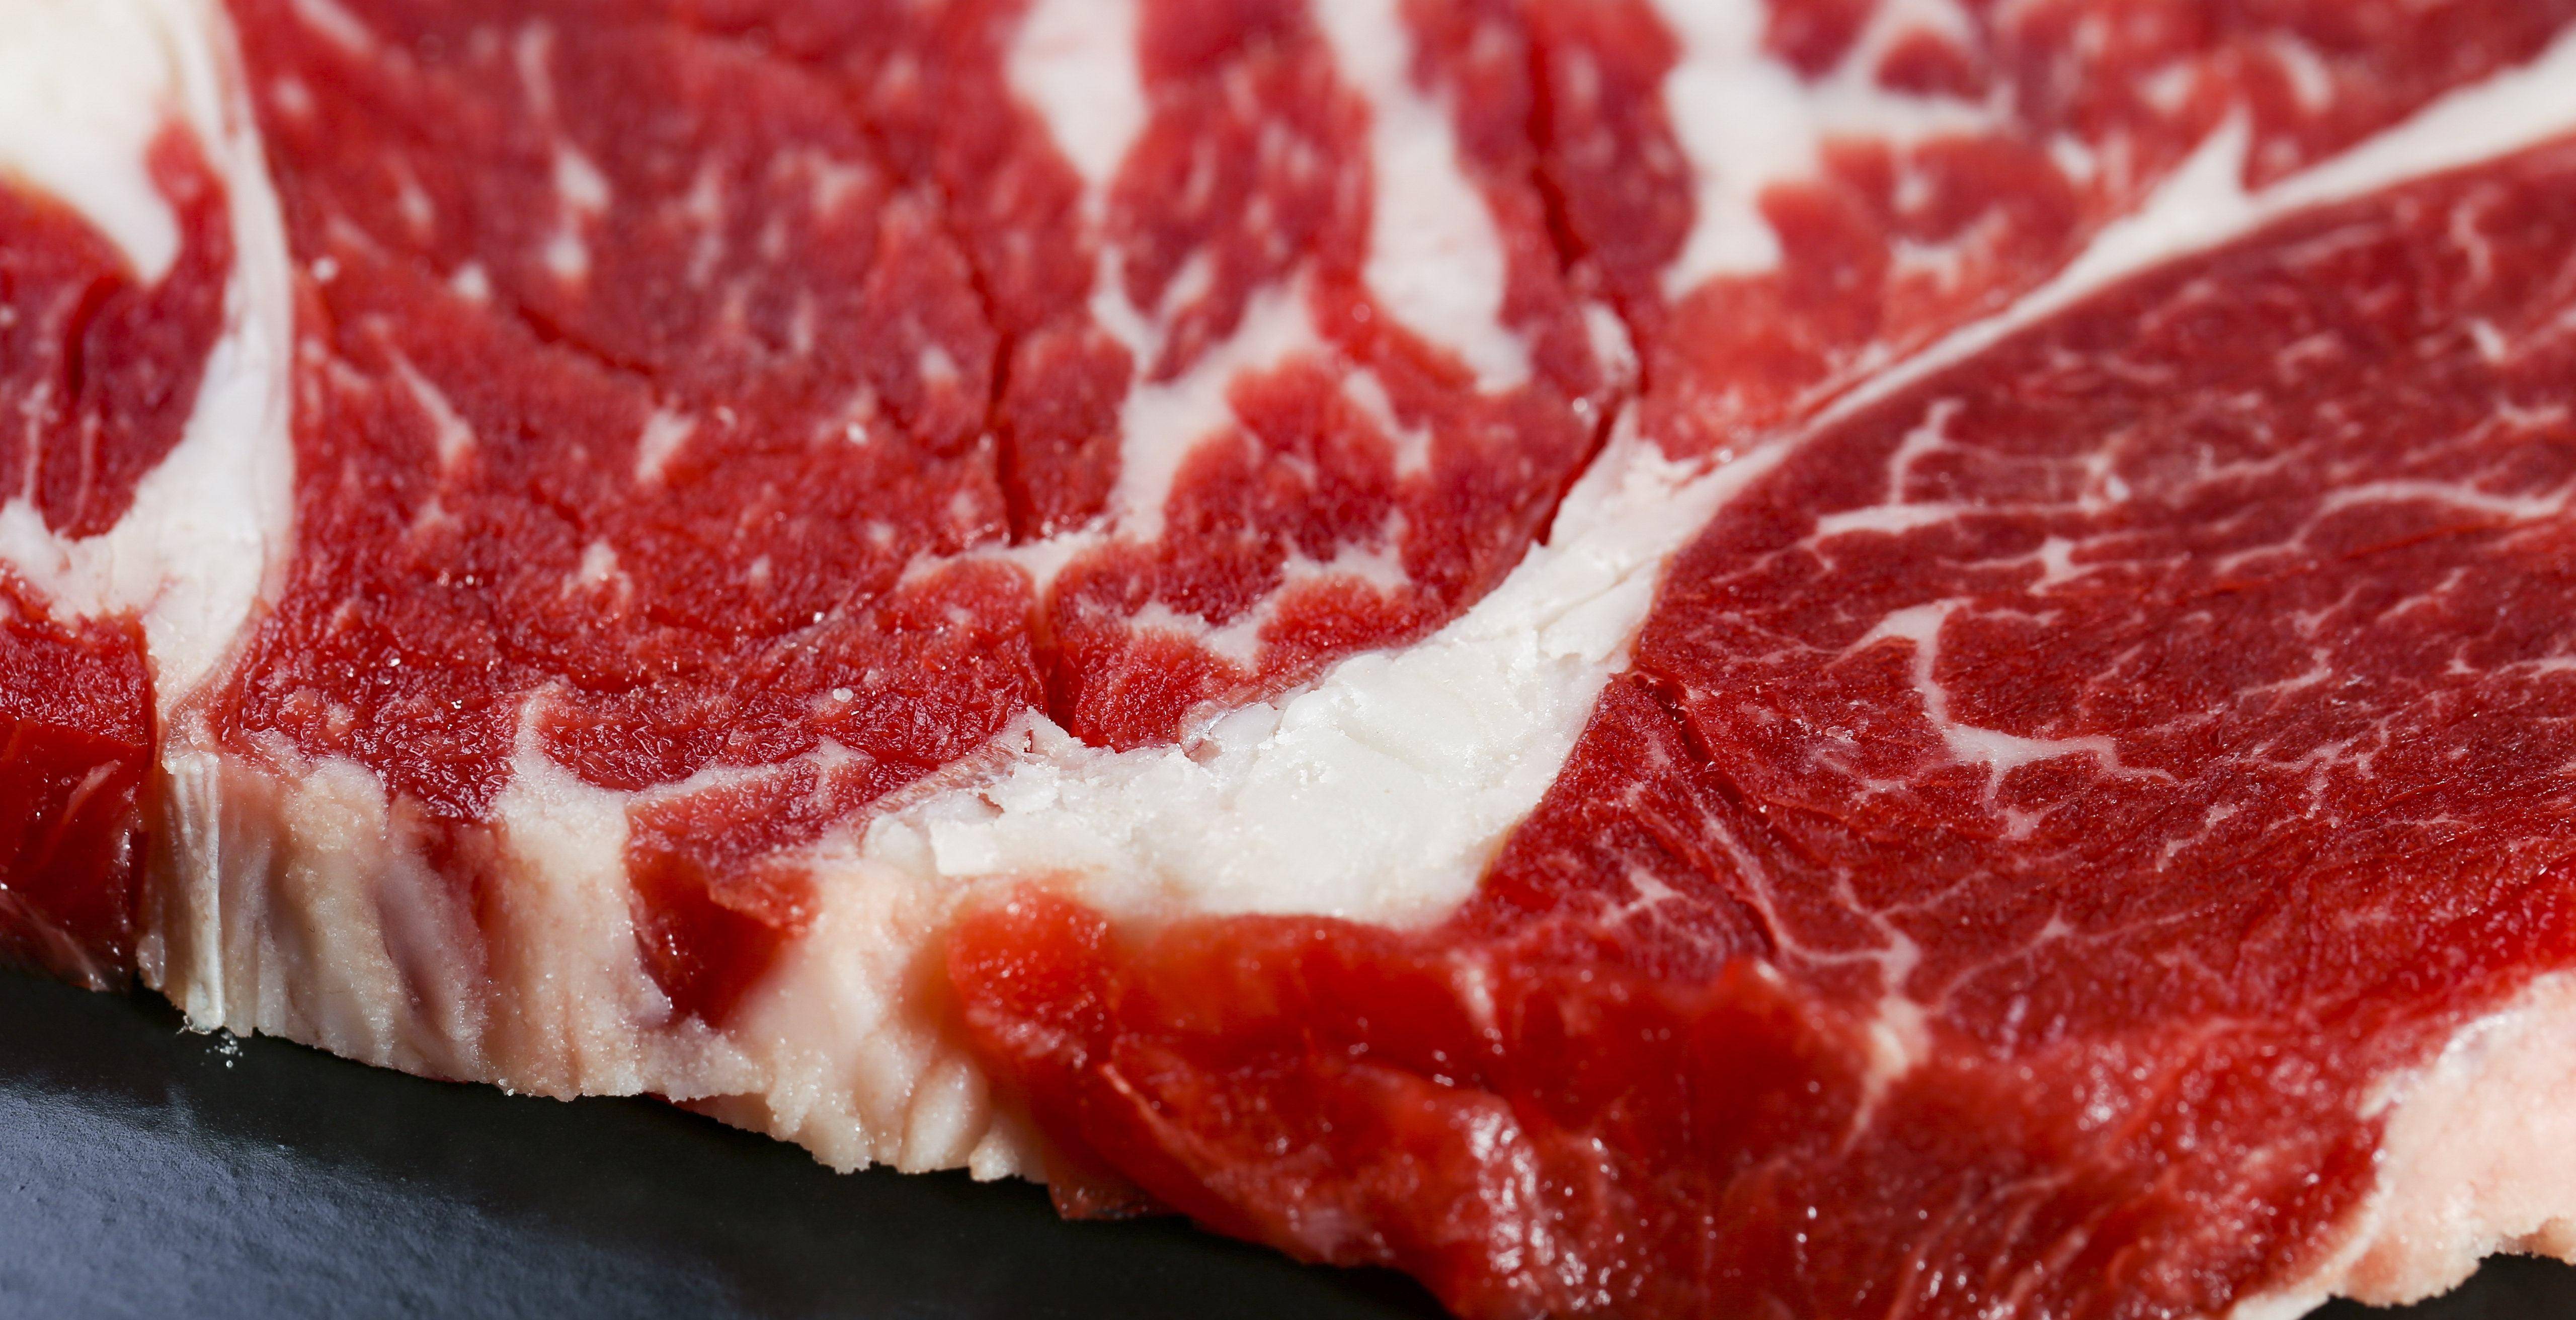 水牛肉与黄牛肉,哪个更加好吃?如何分辨它们呢?